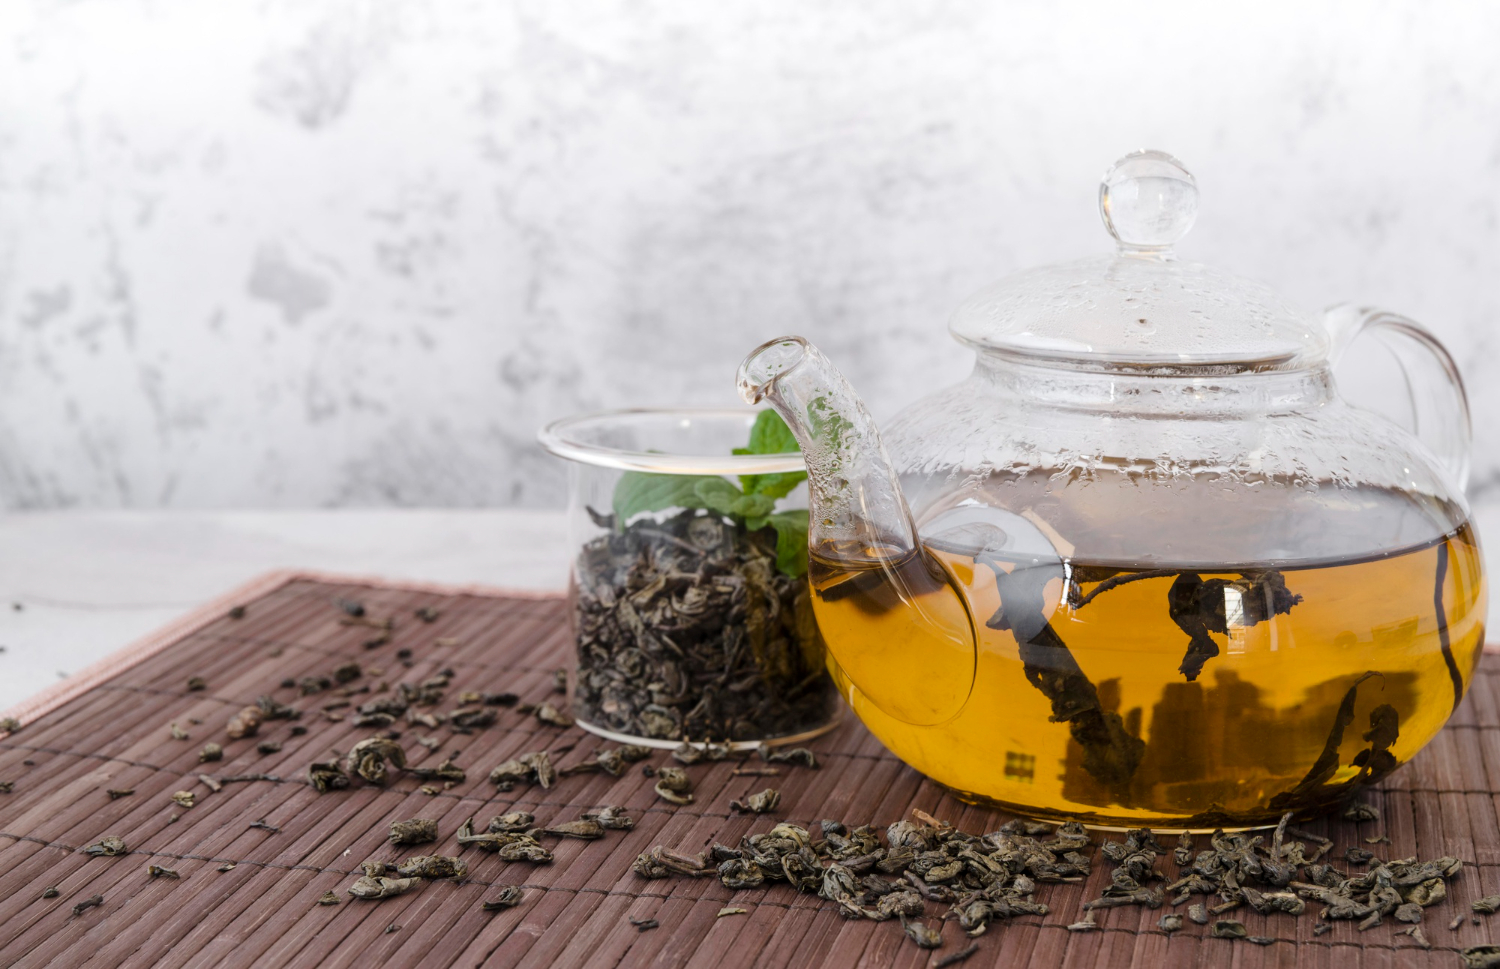 4 лучших натуральных чая для снижения веса, по мнению диетологов
